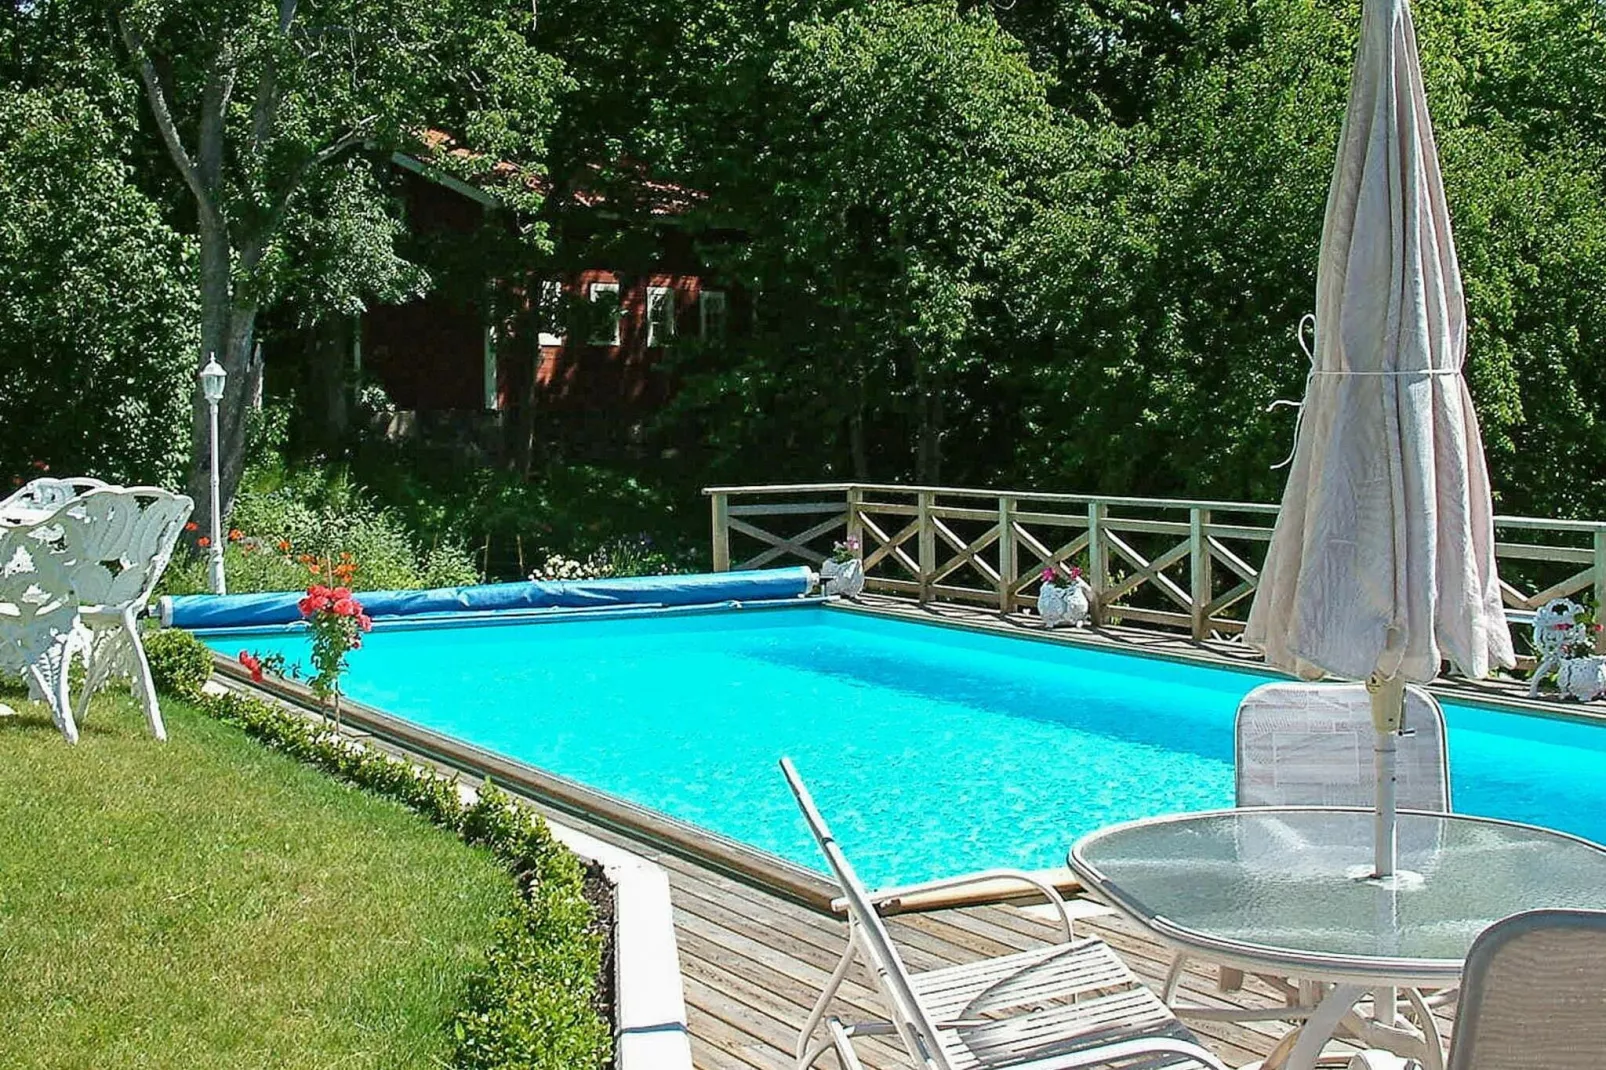 4 persoons vakantie huis in VALDEMARSVIK-Zwembad